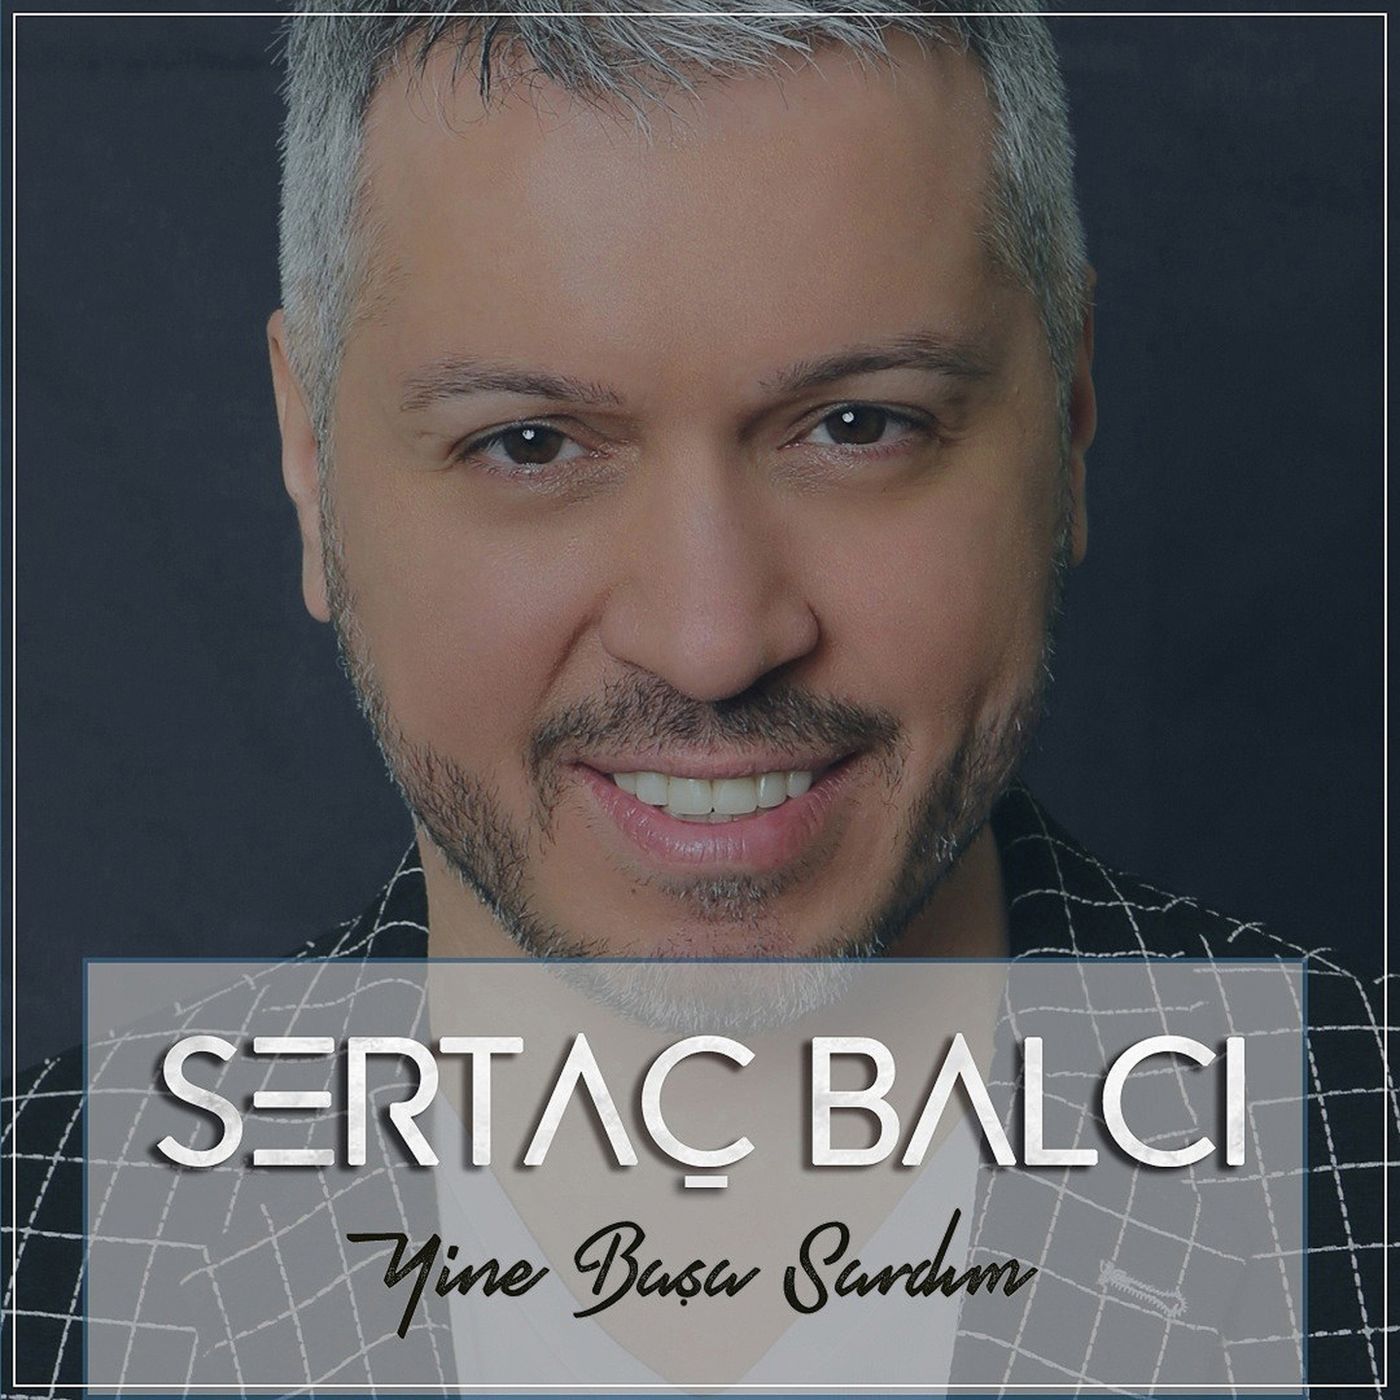 Sertac Balci - Yine Basa Sardim Lyrics